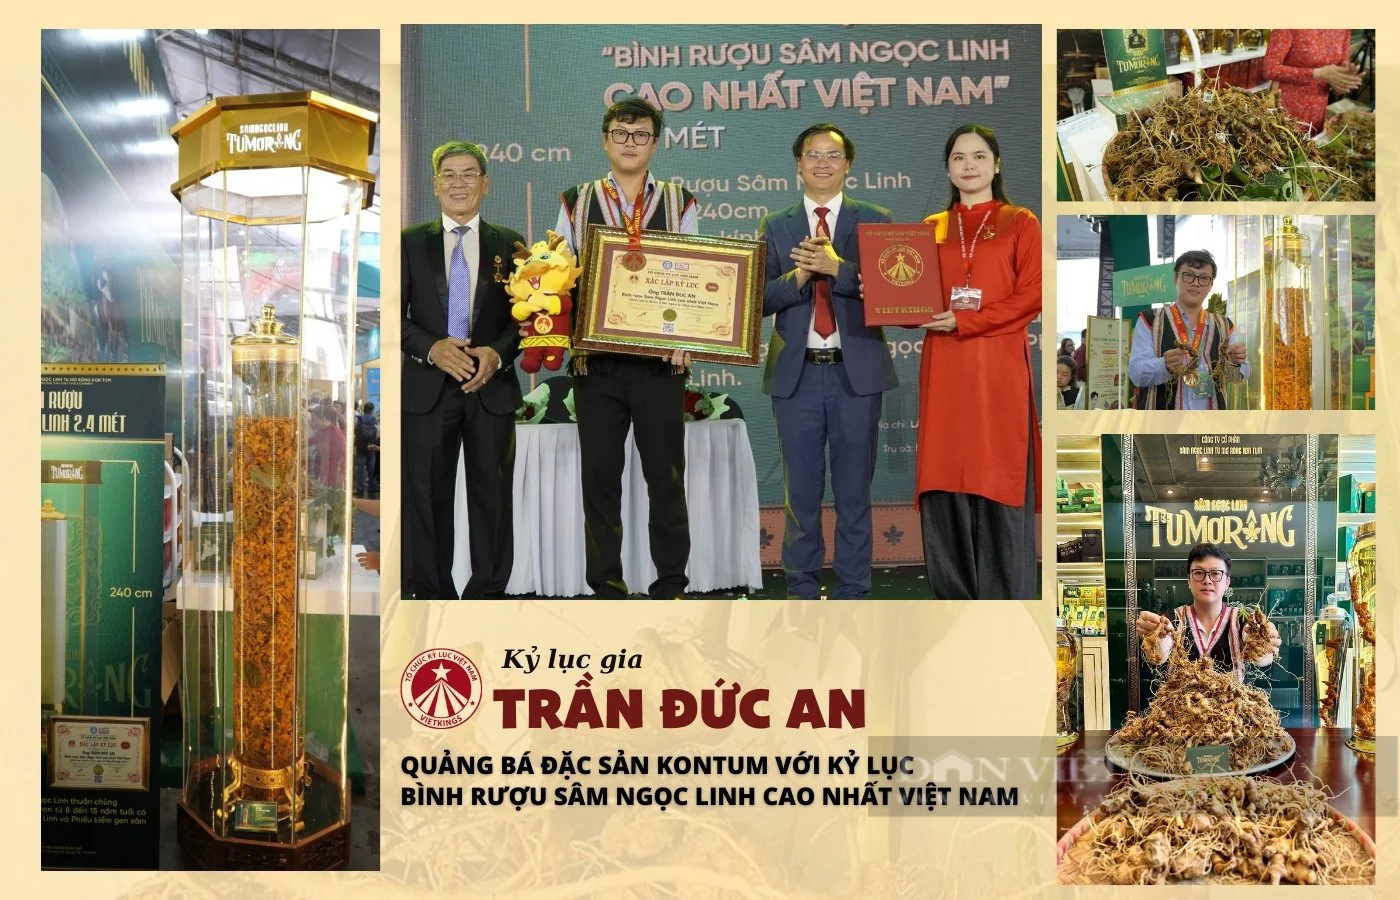 Bình rượu cao 2,4m, ngâm 10kg sâm Ngọc Linh được công nhận kỷ lục Việt Nam- Ảnh 5.